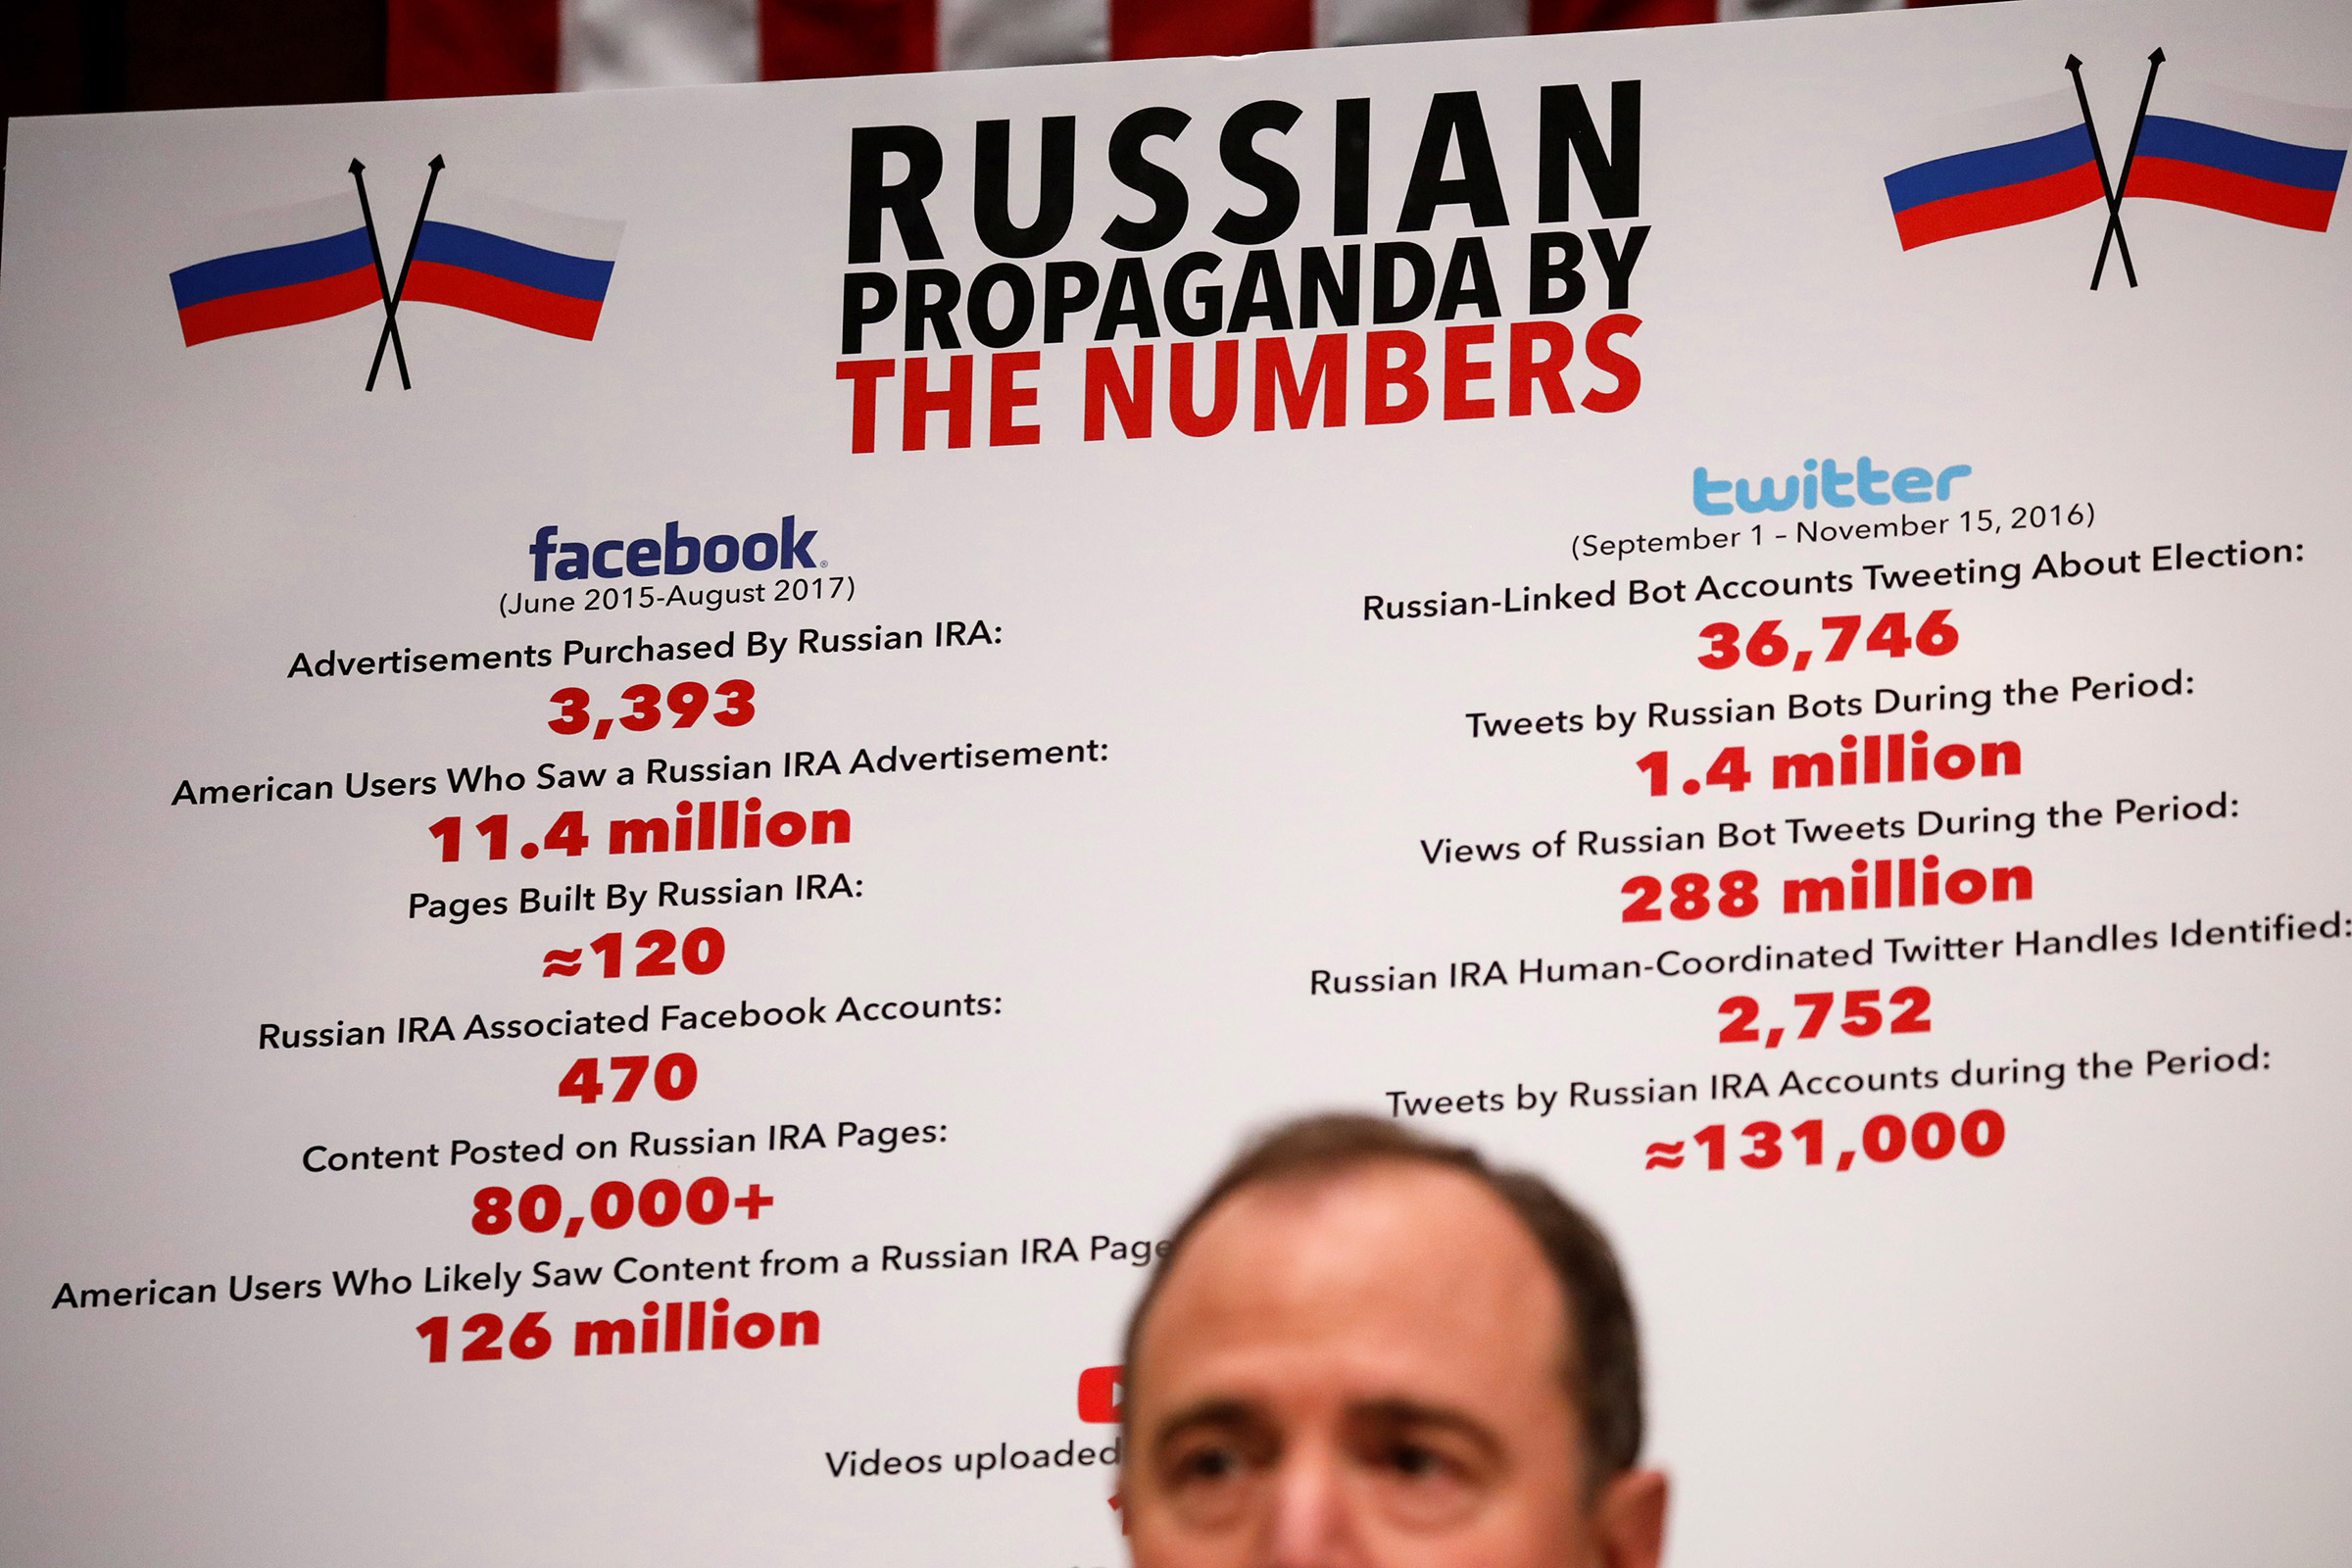 Оценка количества рекламных сообщений, купленных Россией в Facebook, и связанных с Москвой ботов в Twitter, которые публиковали сообщения о выборах. Каждое объявление в Facebook в среднем охватывало около 11,4 млн граждан США.